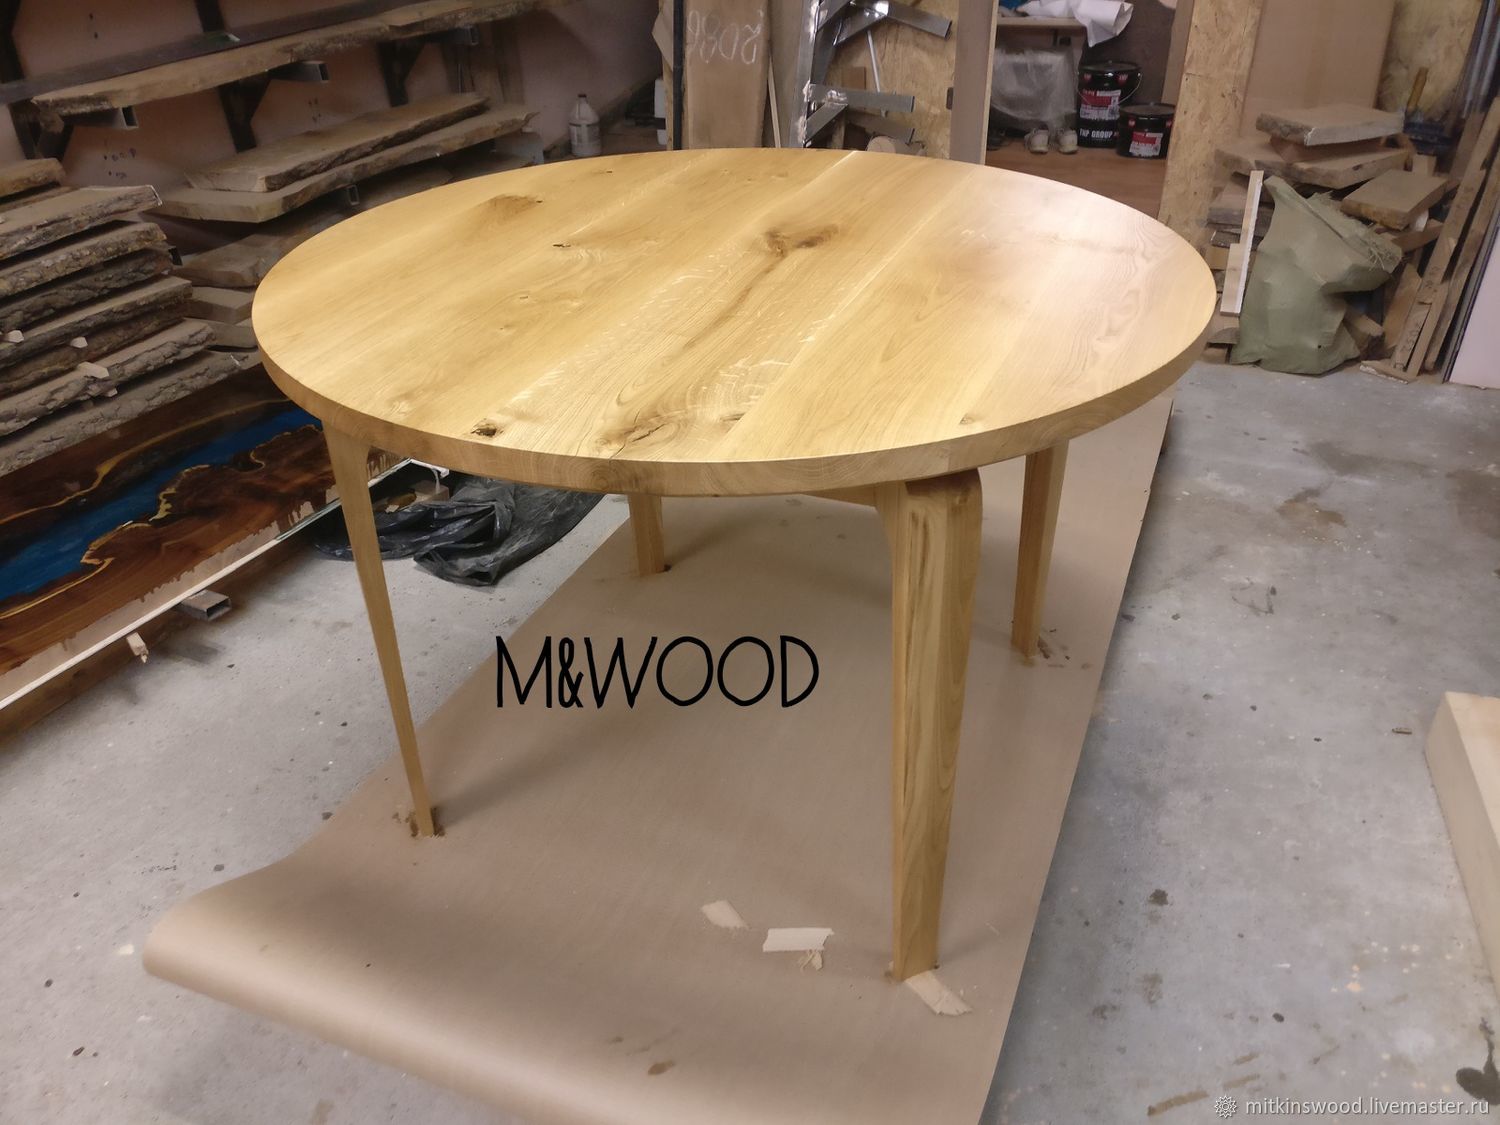 M&Wood 
